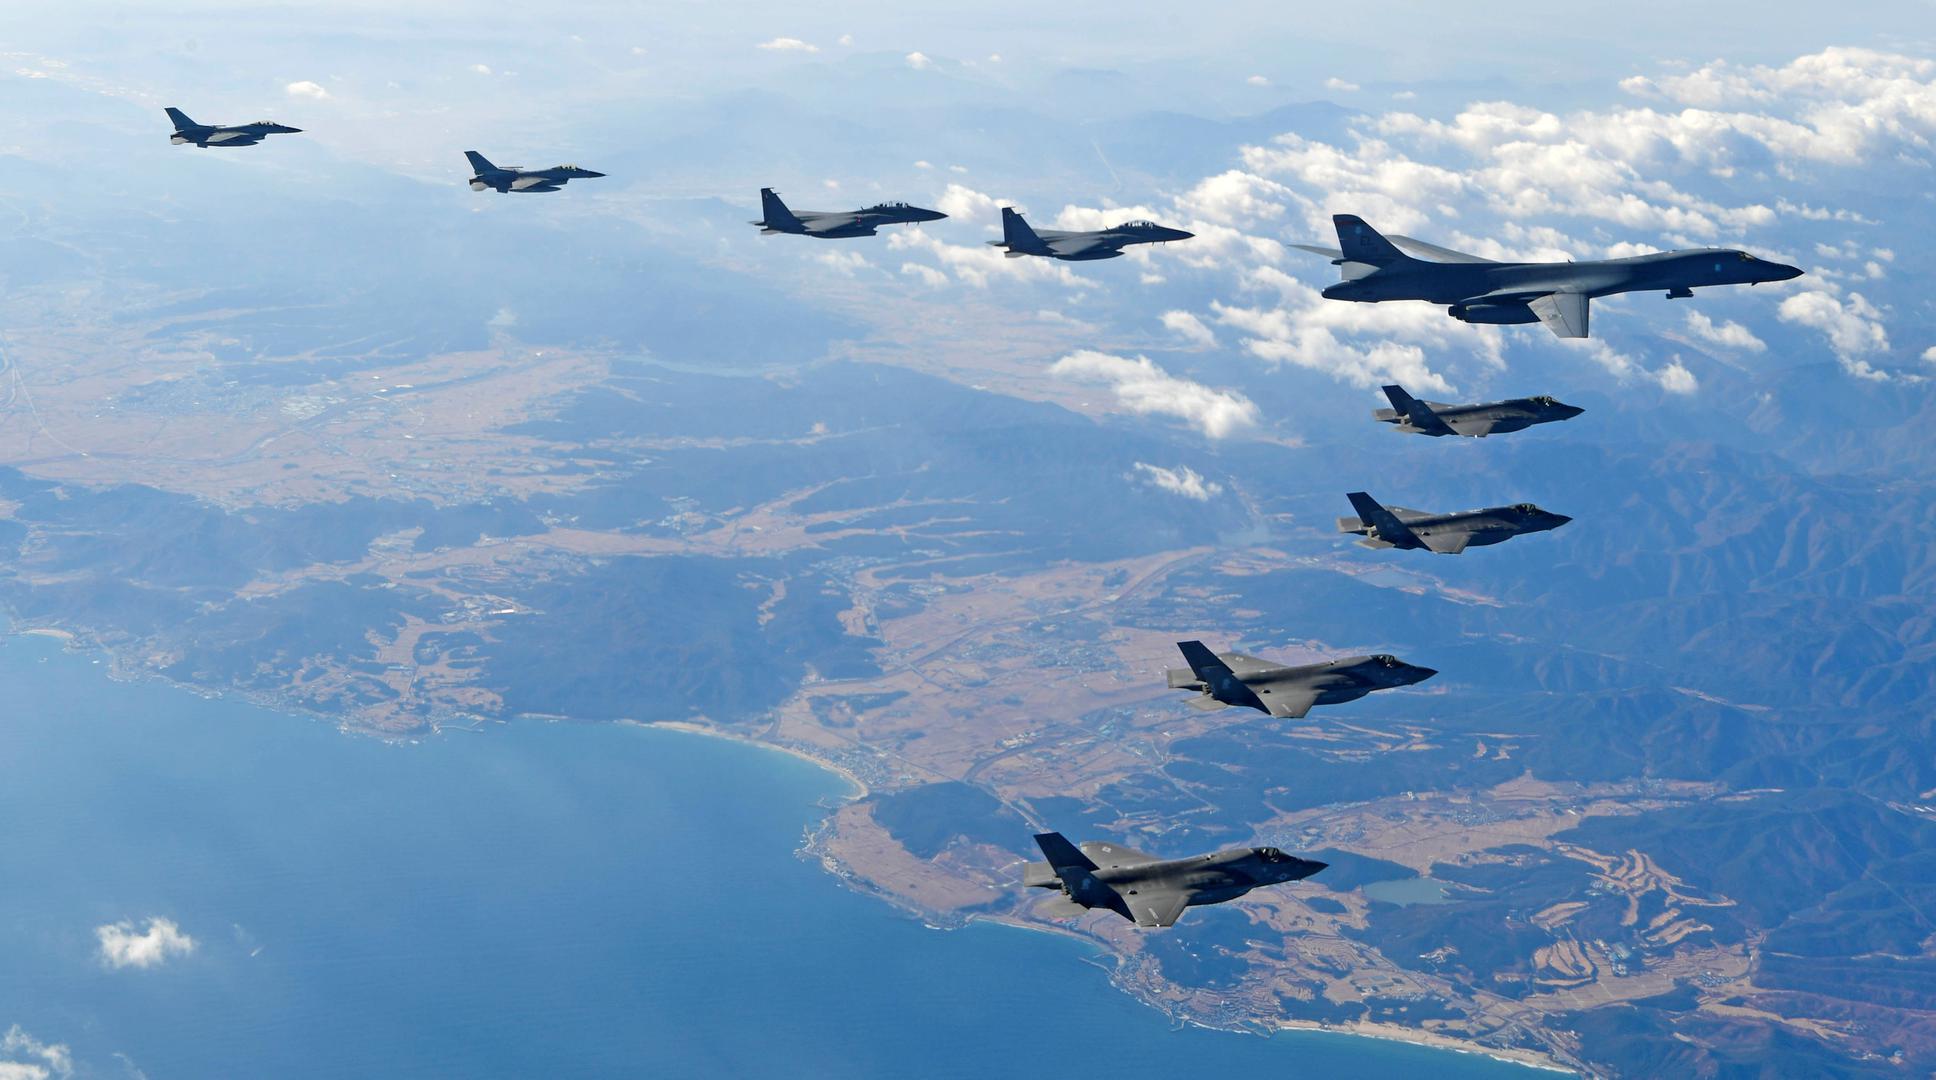 Zajednička petodnevna vježba vojnog zrakoplovstva Južne Koreje i Sjedinjenih Država započela je u ponedjeljak, manje od tjedan dana nakon što je Pjongjang testirao balistički projektil koji prema njihovim tvrdnjama može dosegnuti ciljeve na cijelom teritoriju SAD-a.
